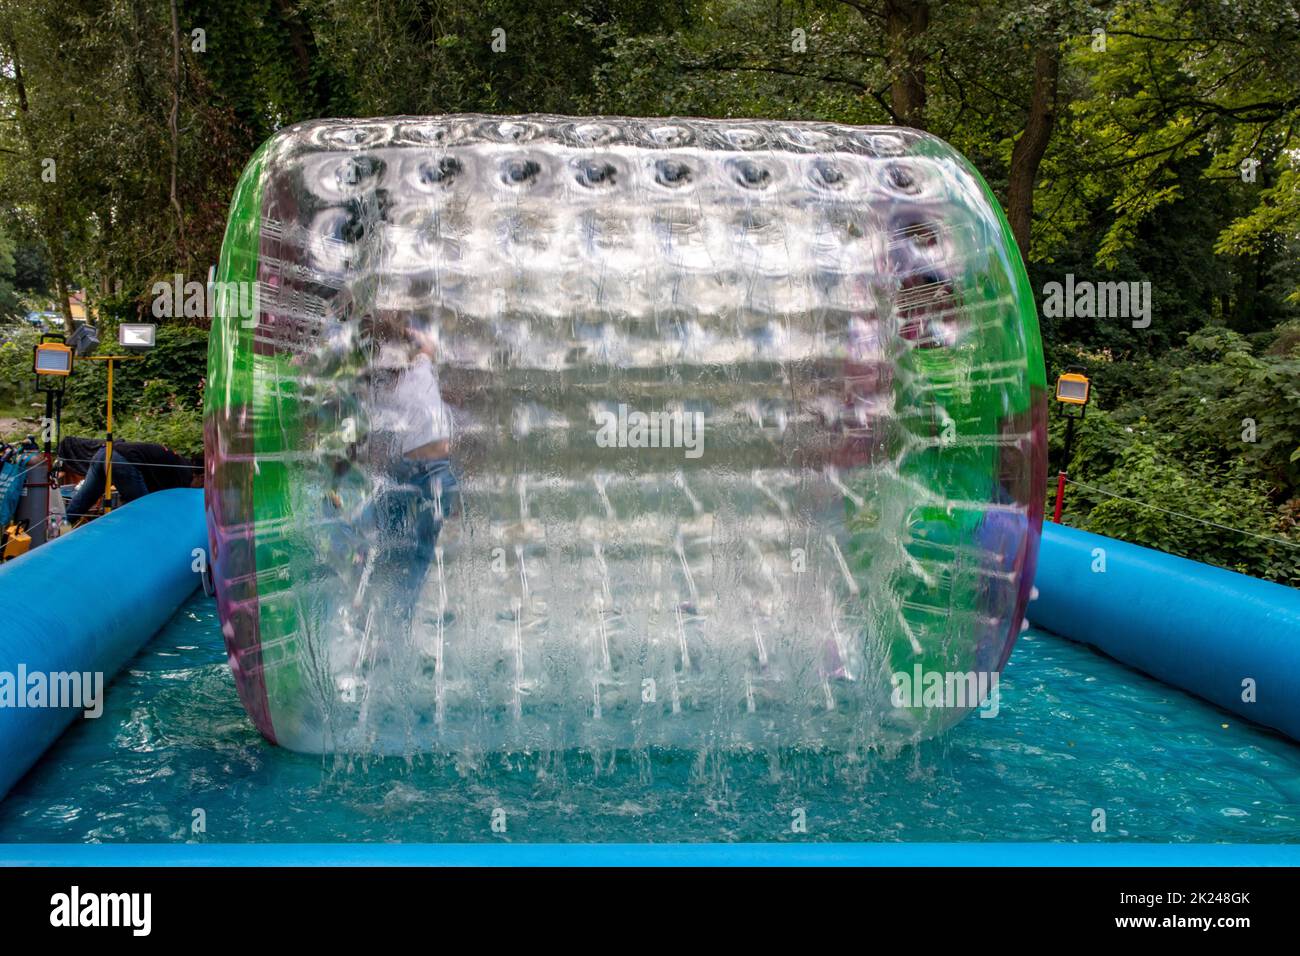 Eau ou aqua zorbing.Les enfants jouent à l'intérieur du rouleau gonflable transparent flottant dans la piscine.Promenade dans l'eau ou zorbing très populaire acte amusant Banque D'Images